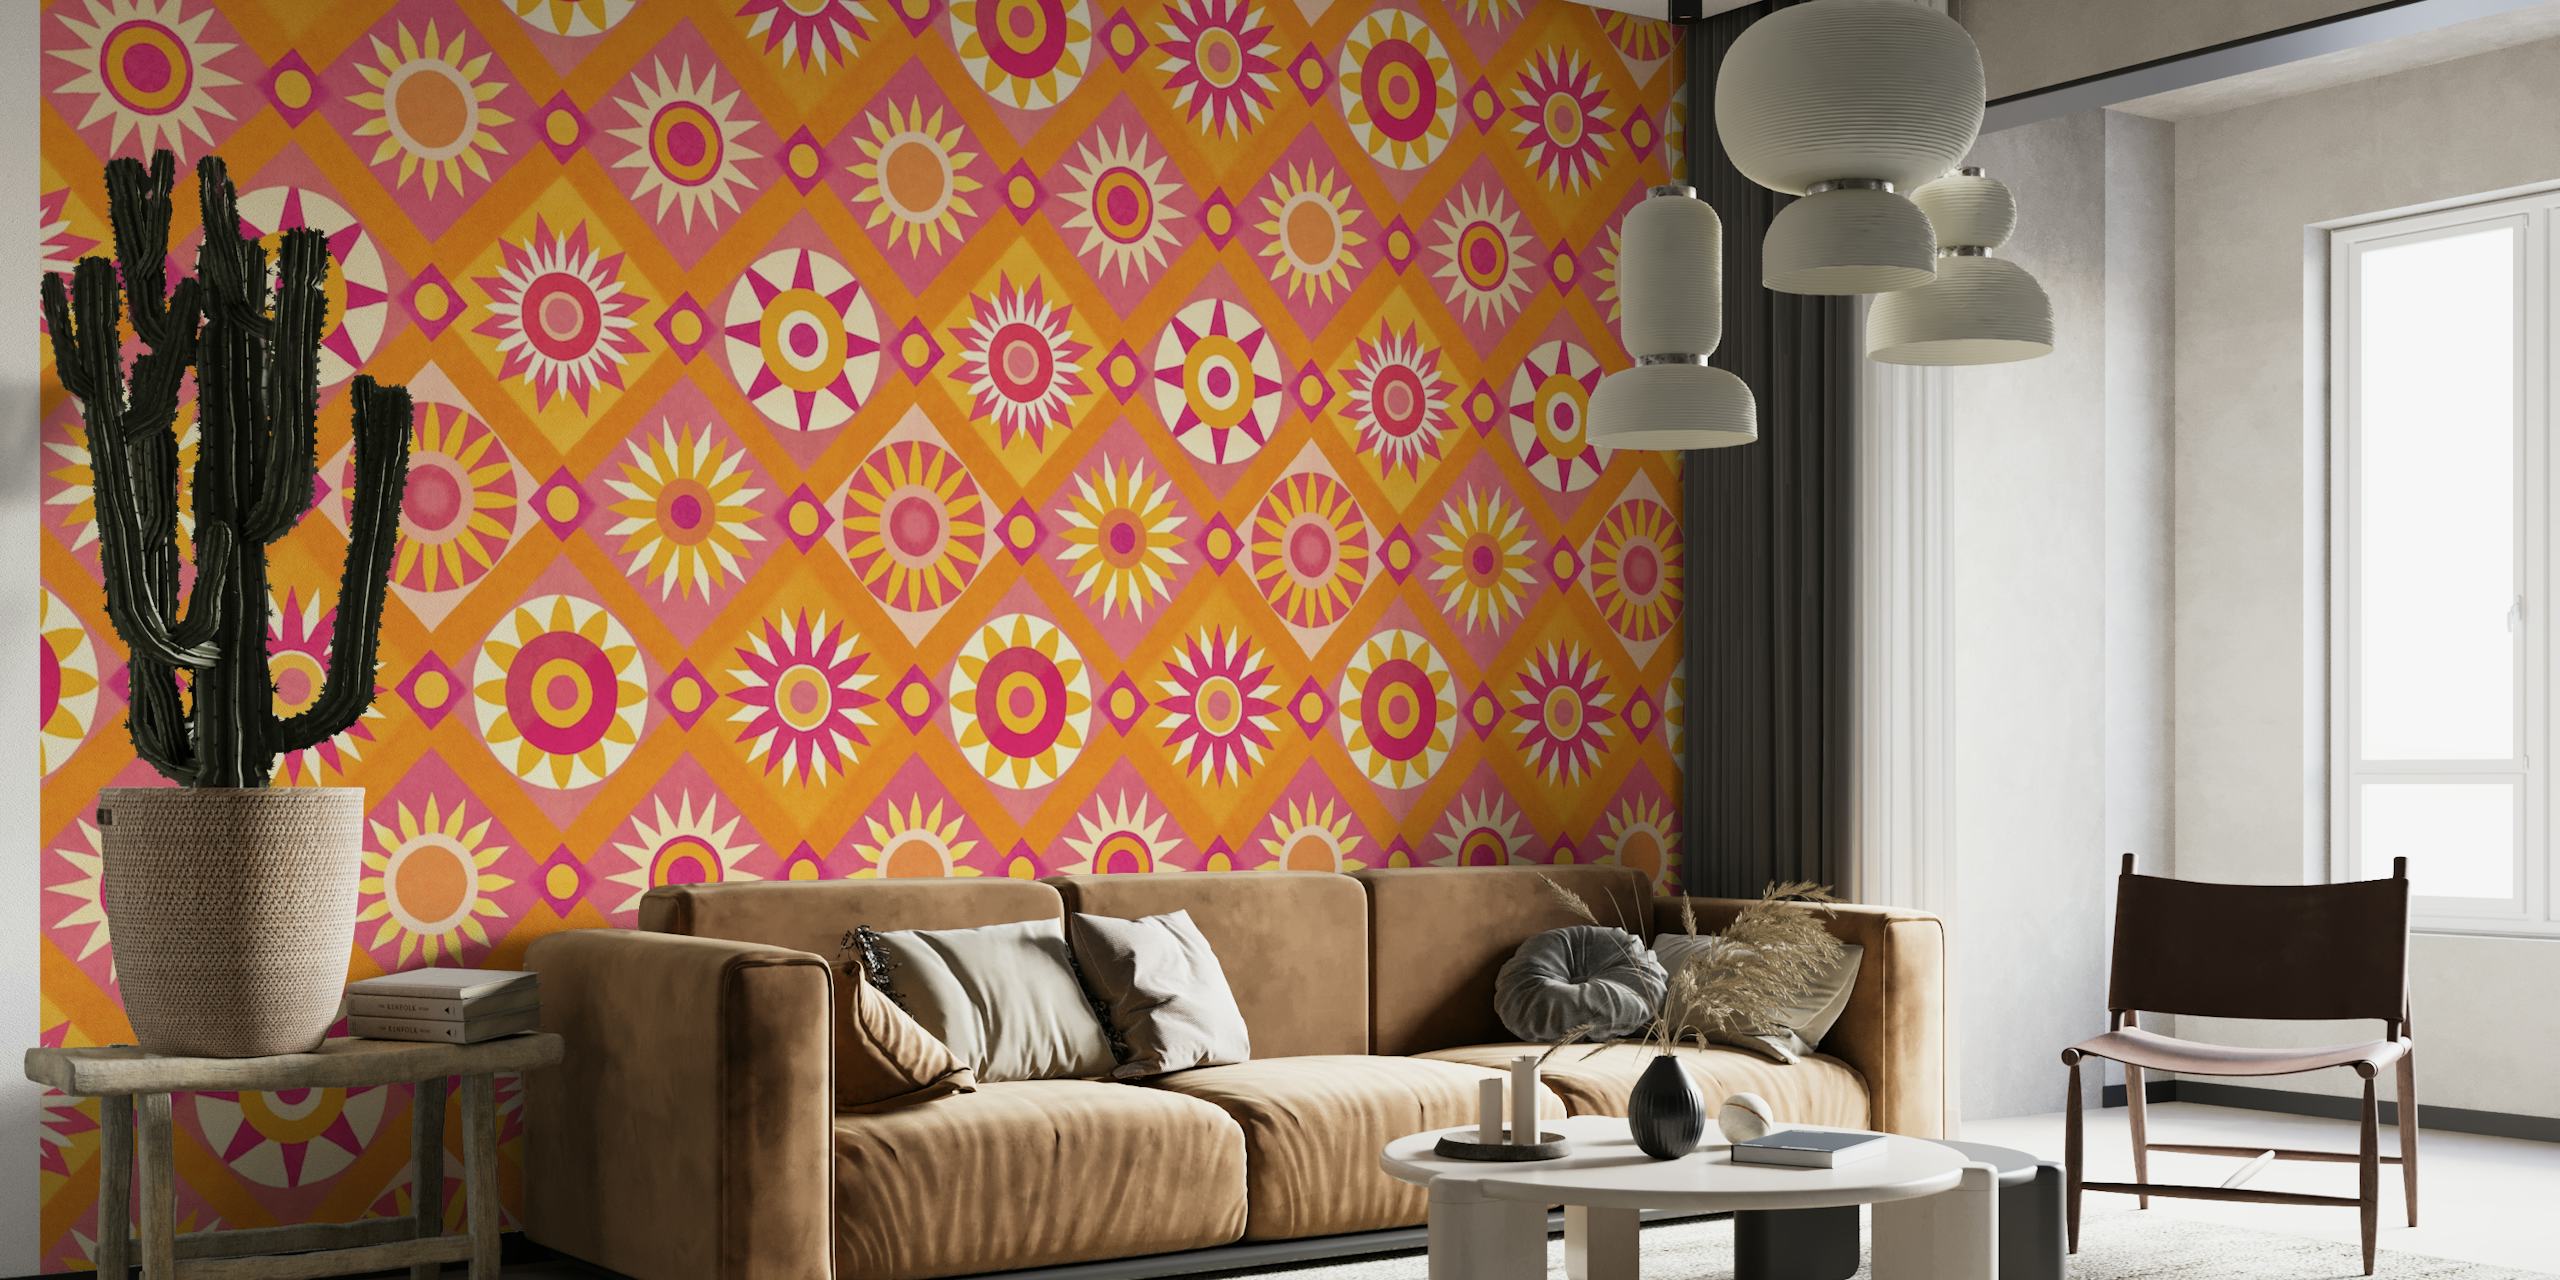 Grillige Sunshine Quilt Collage-muurschildering met levendige roze en oranje patronen